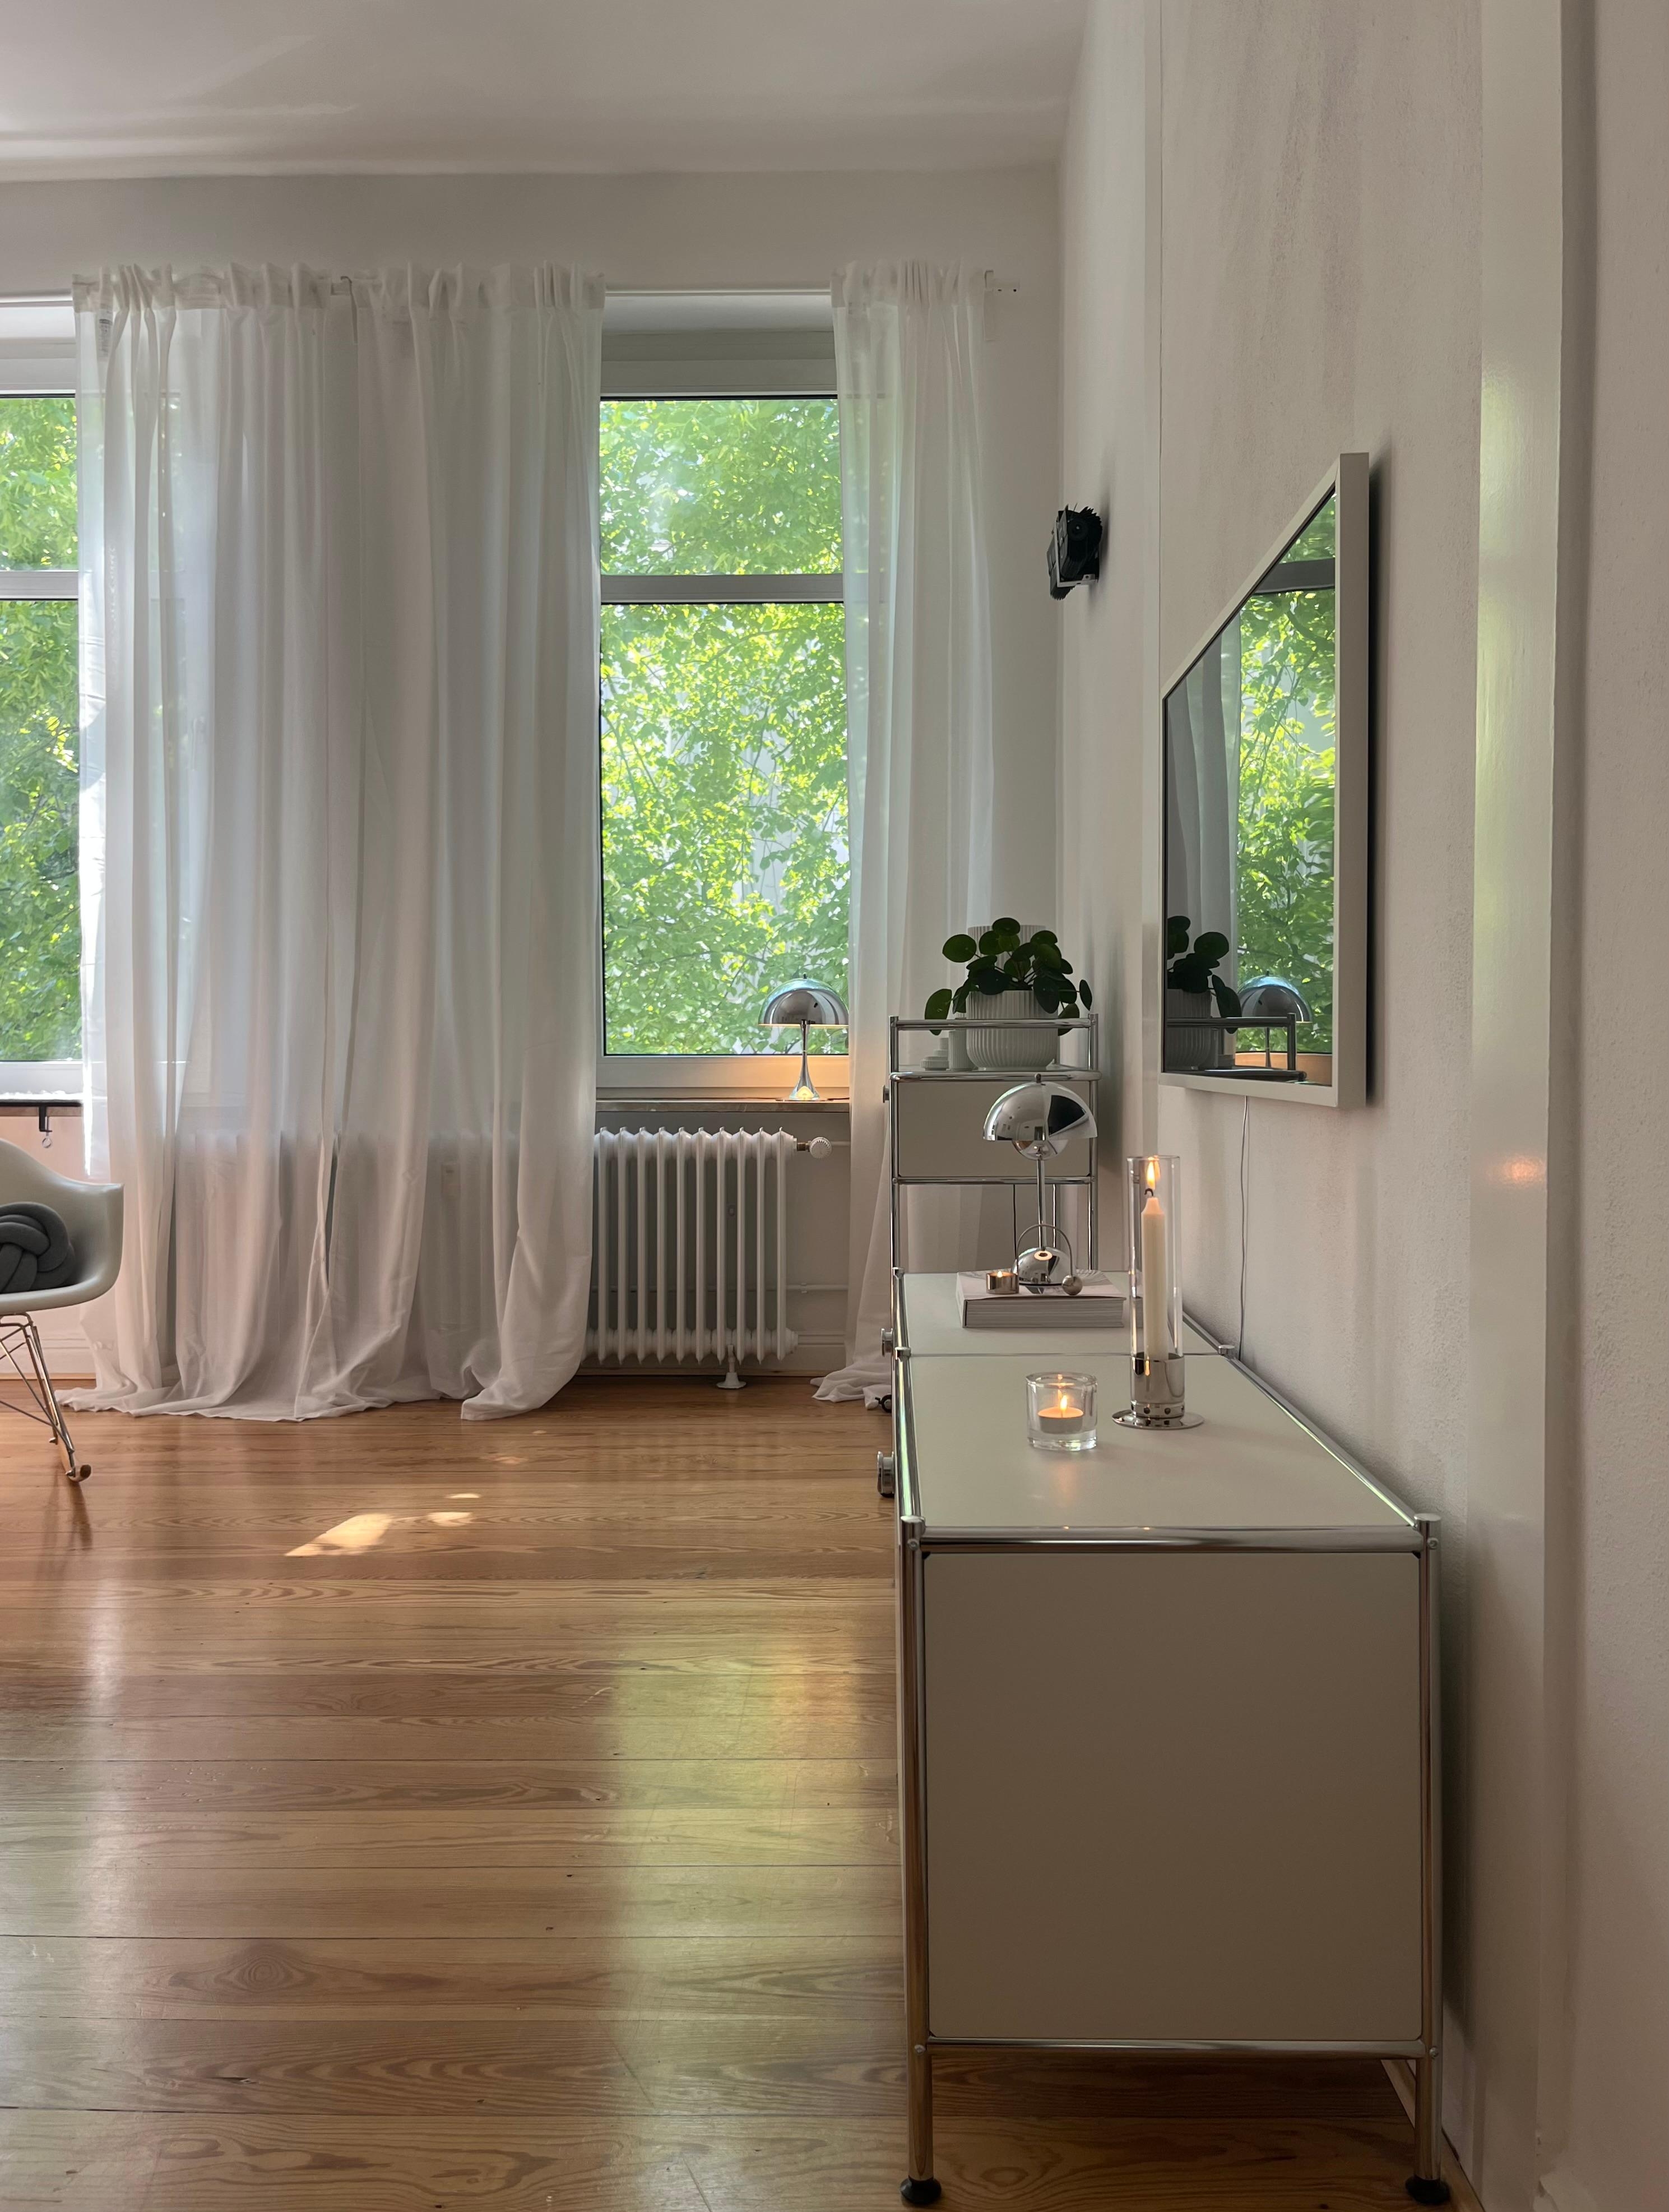 #wohnzimmer #leuchtenliebe #danishdesign #altbauwohnung #altbauliebe #skandinavischwohnen 